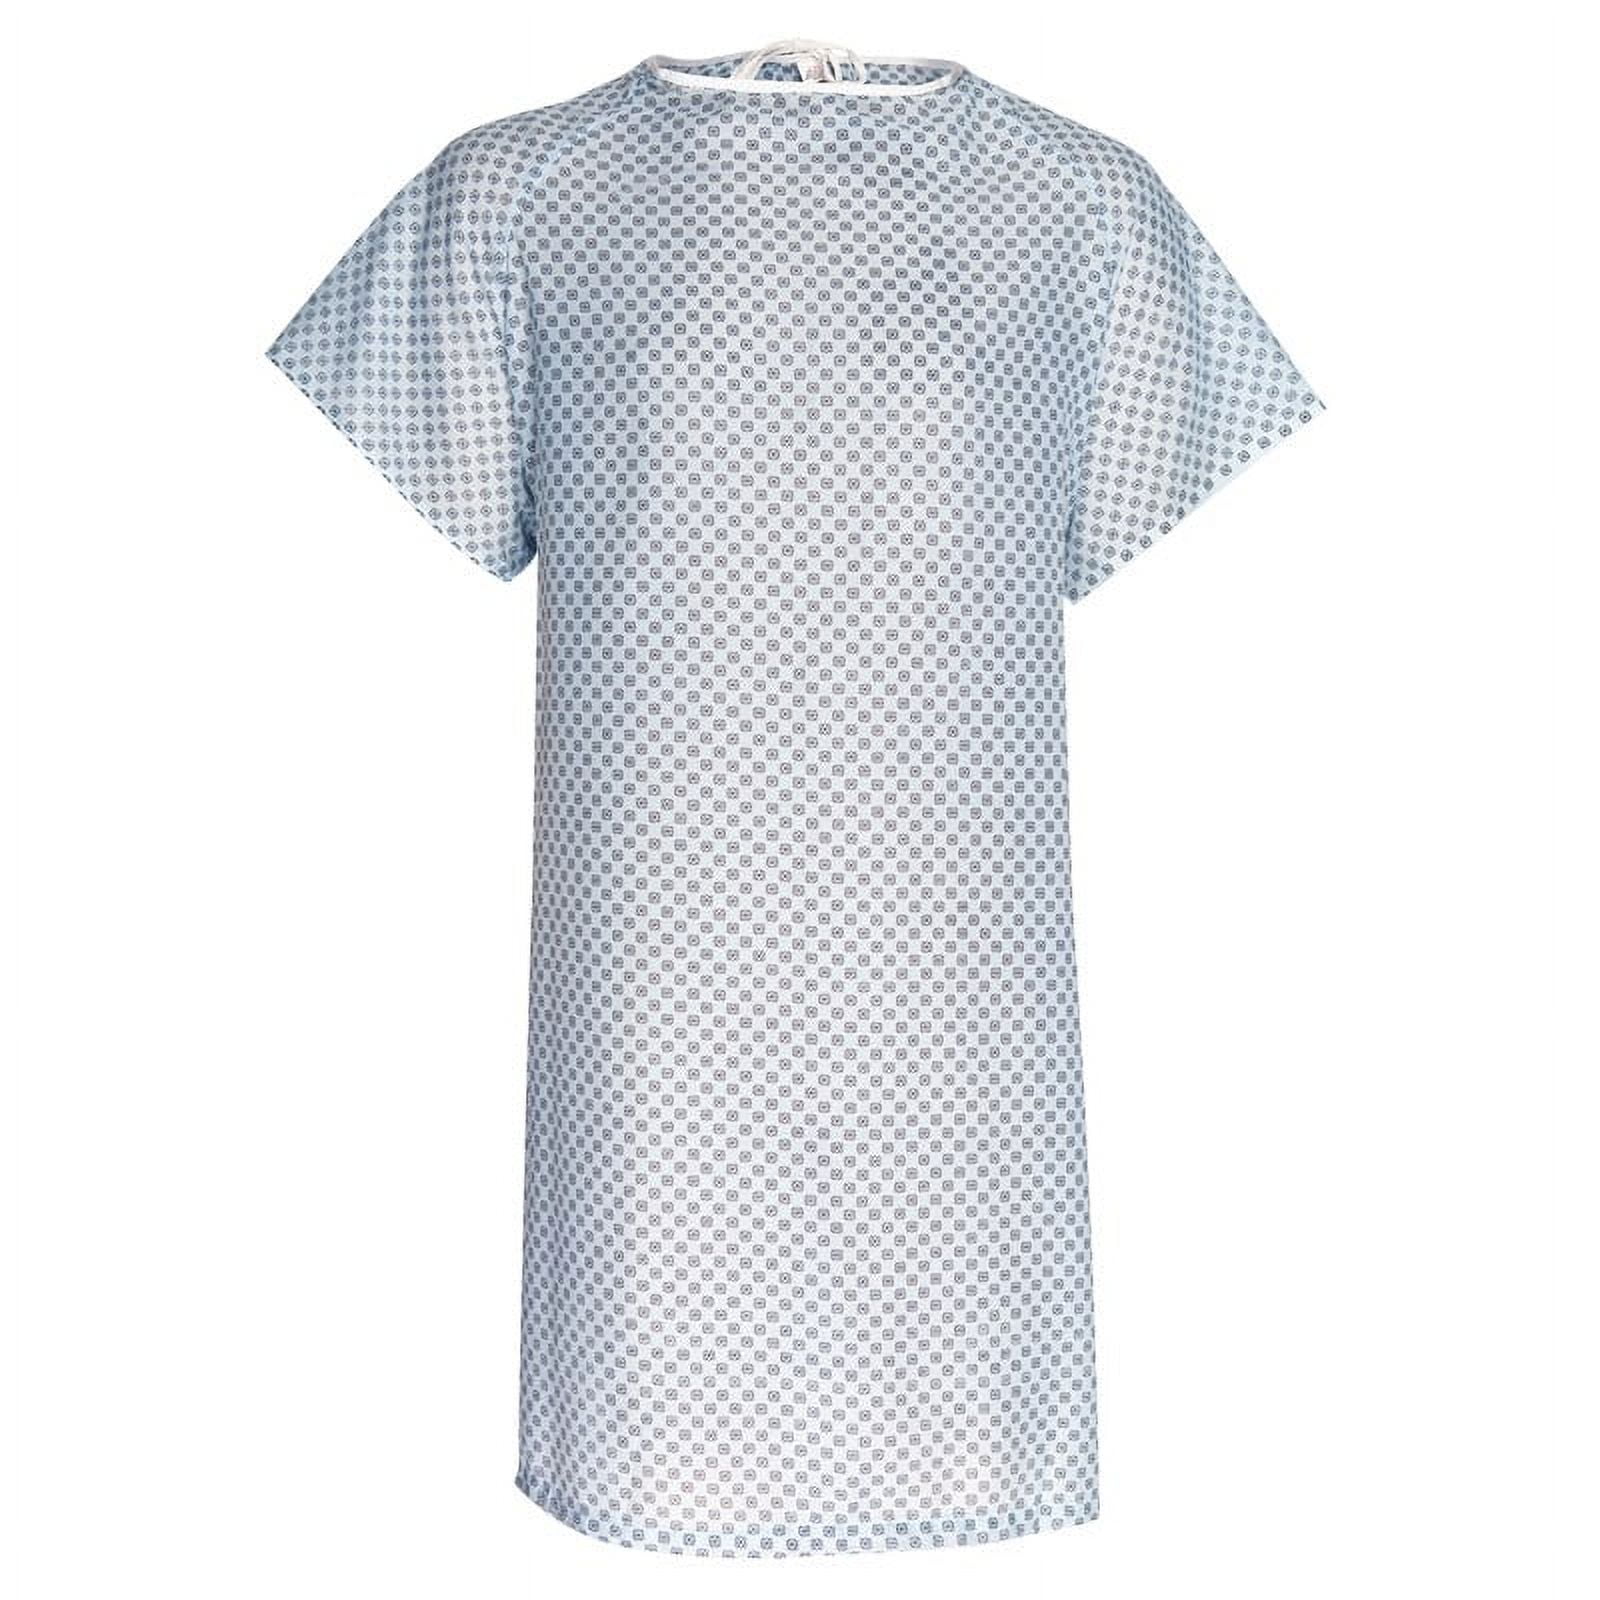 Hospital Gown - Unisex Exam Gown(1 Dozen) - Walmart.com